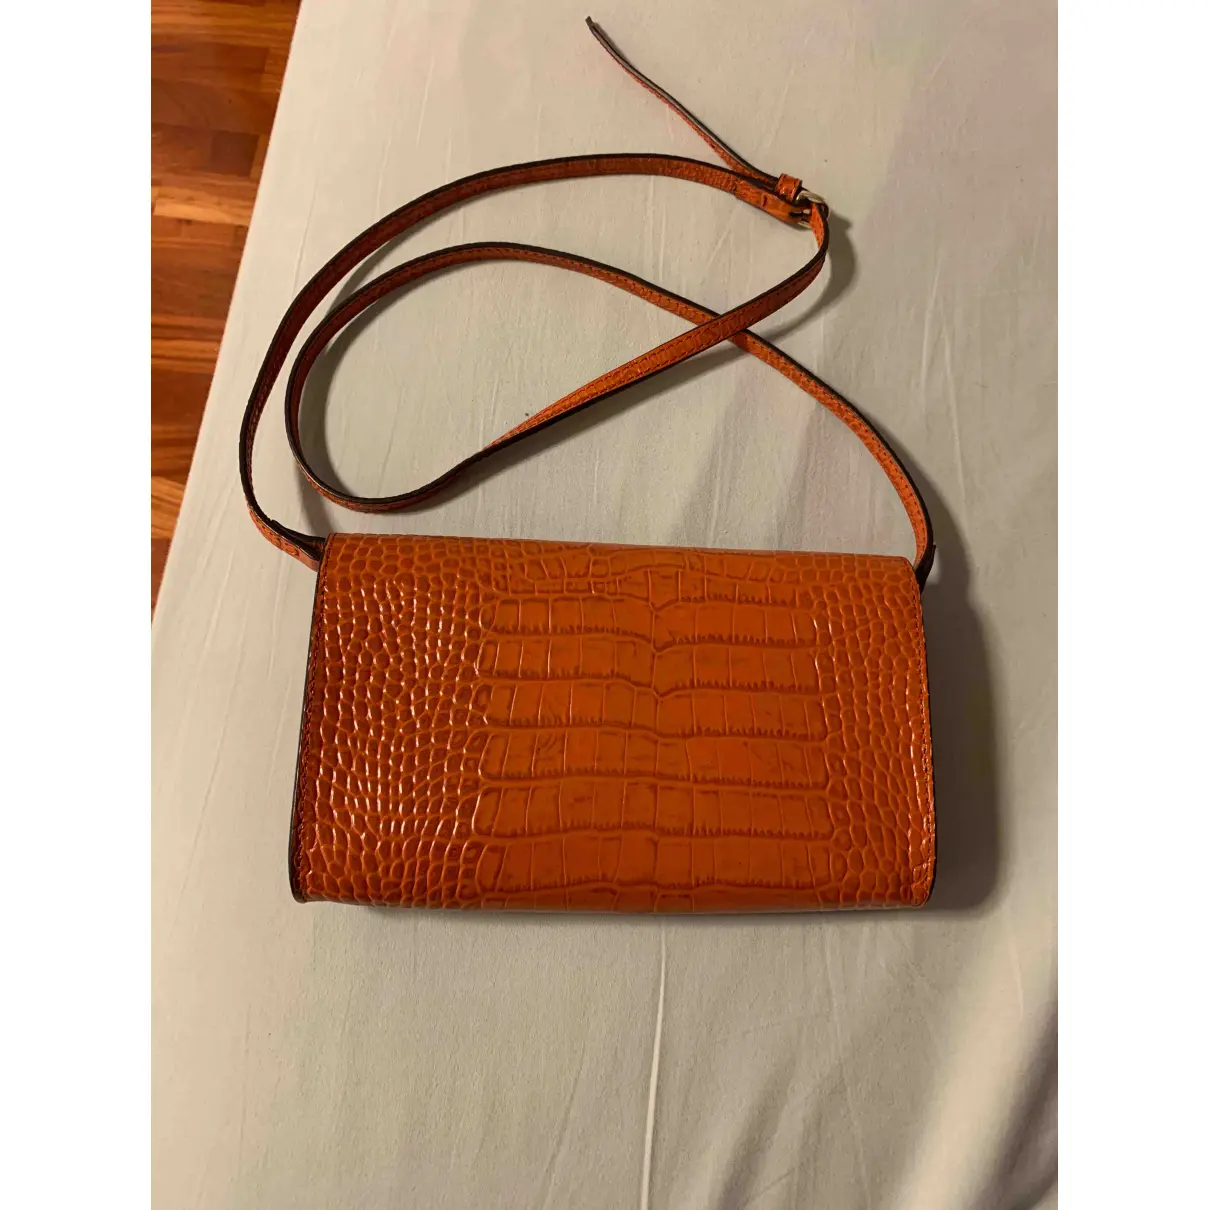 Buy L'AUTRE CHOSE Leather handbag online